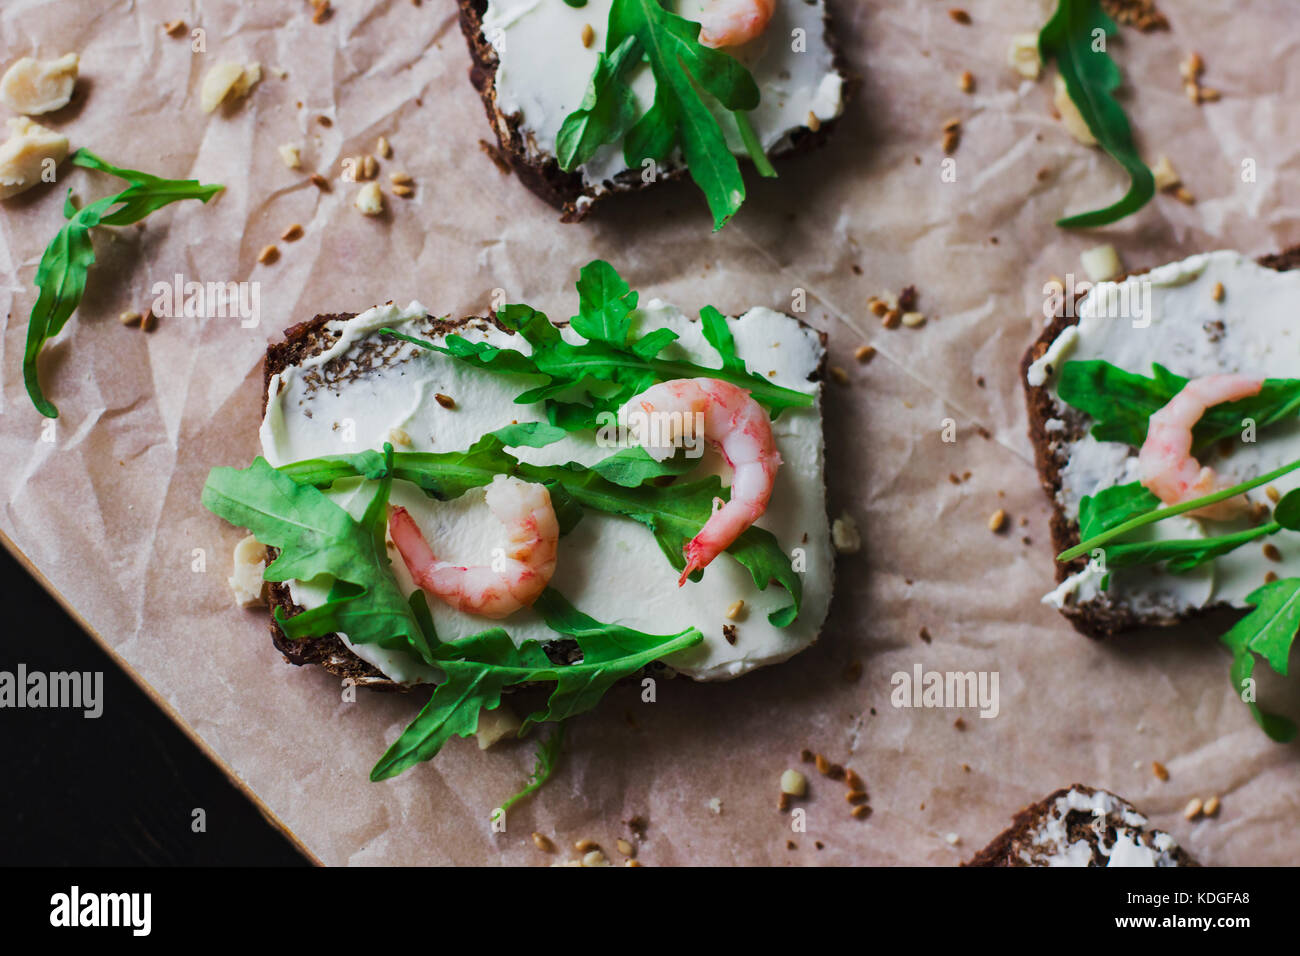 Die Sandwiches auf Korn Brot mit Ricotta und Garnelen Stockfotografie ...